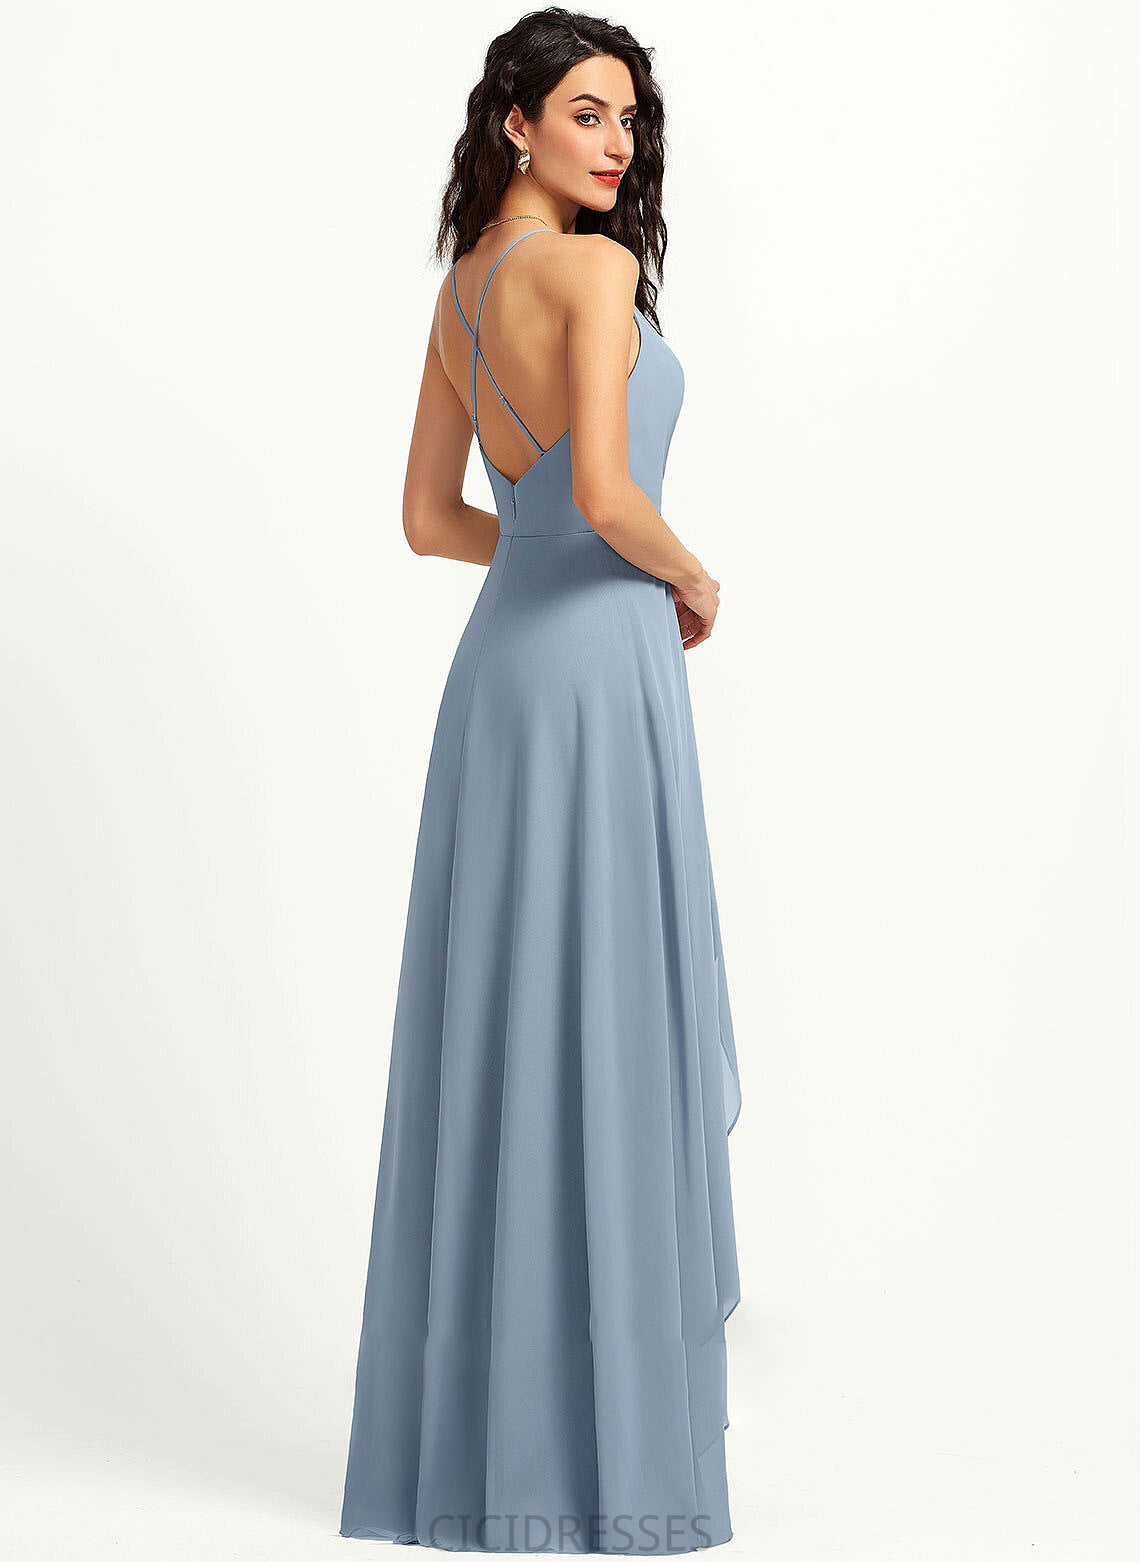 A-Line Straps Neckline V-neck Fabric Length Asymmetrical Silhouette Luna A-Line/Princess Half Sleeves Natural Waist Bridesmaid Dresses